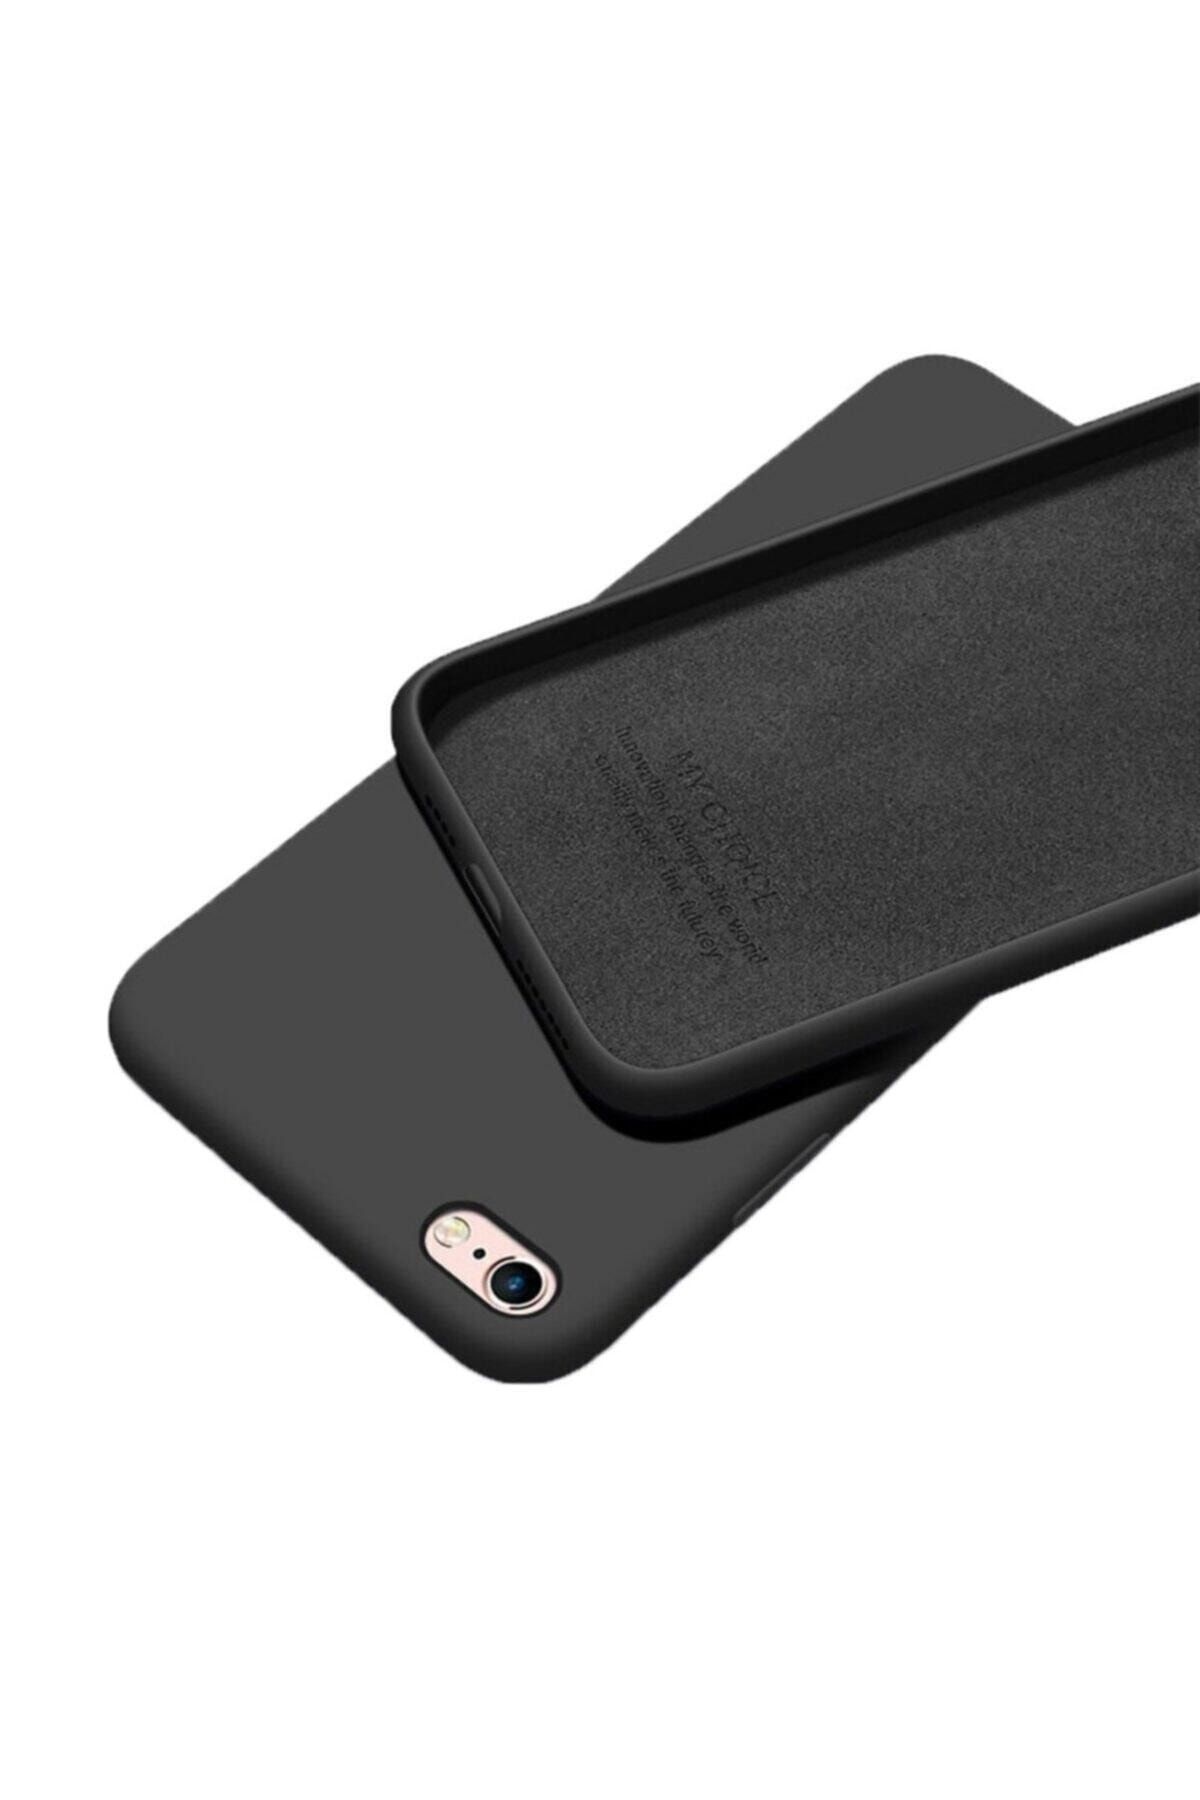 Mopal Iphone 6plus /6s Plus Için Siyah Içi Kadife Lansman Silikon Kılıf - Molly